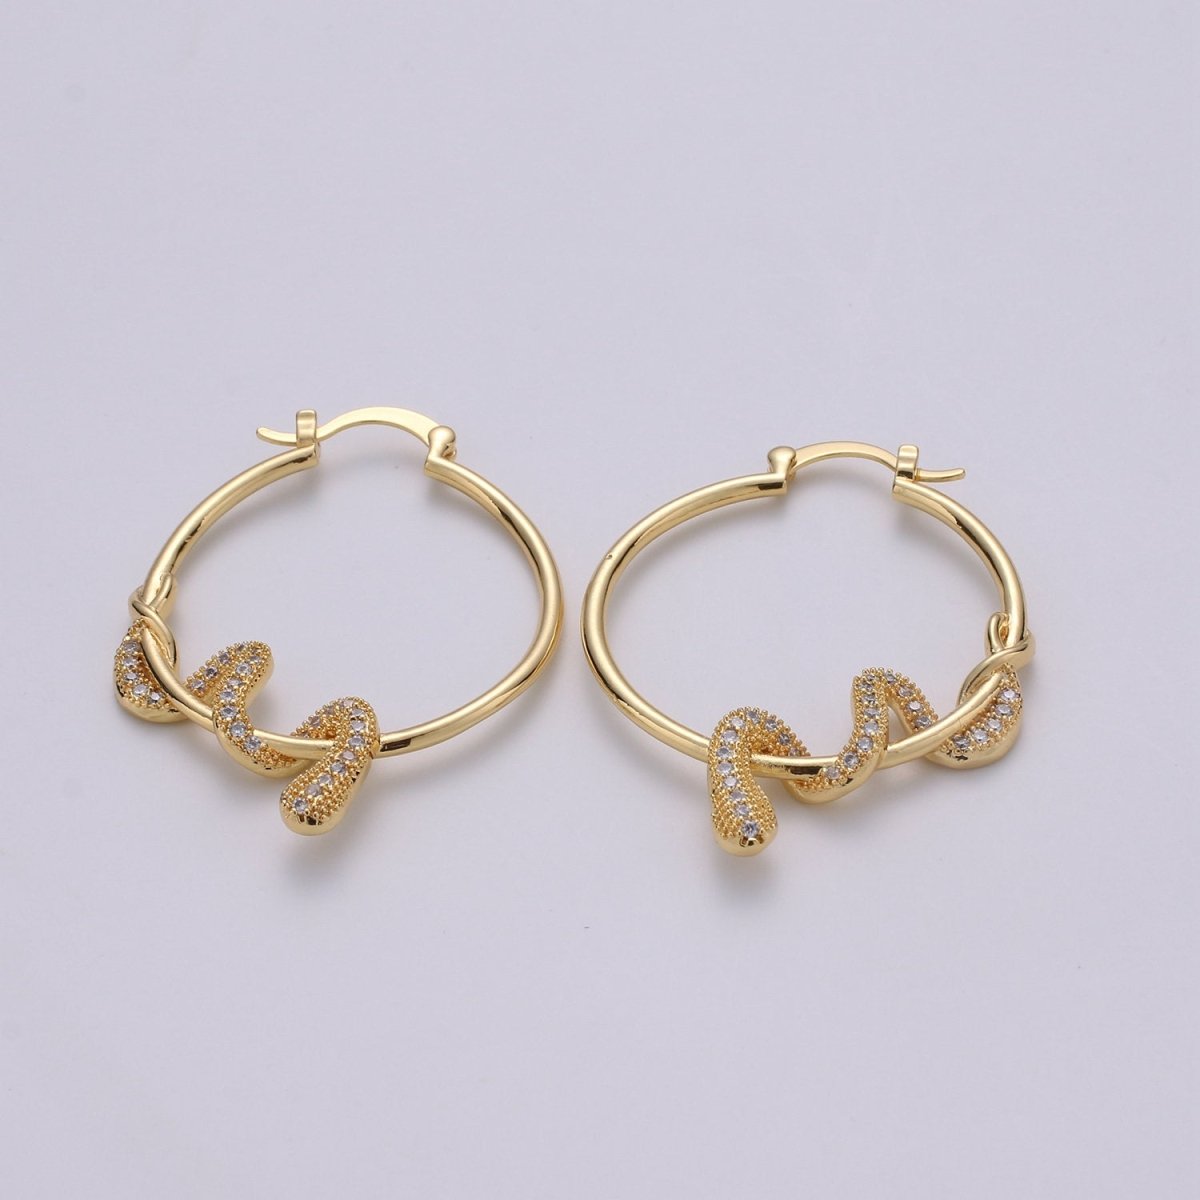 Snake earrings, snake hoop earrings serpent earrings, Gold earrings Micro Pave CZ Earring Jewelry Black Clear Blue Fuchsia Teal Zirconia Q-100 - Q-105 - DLUXCA